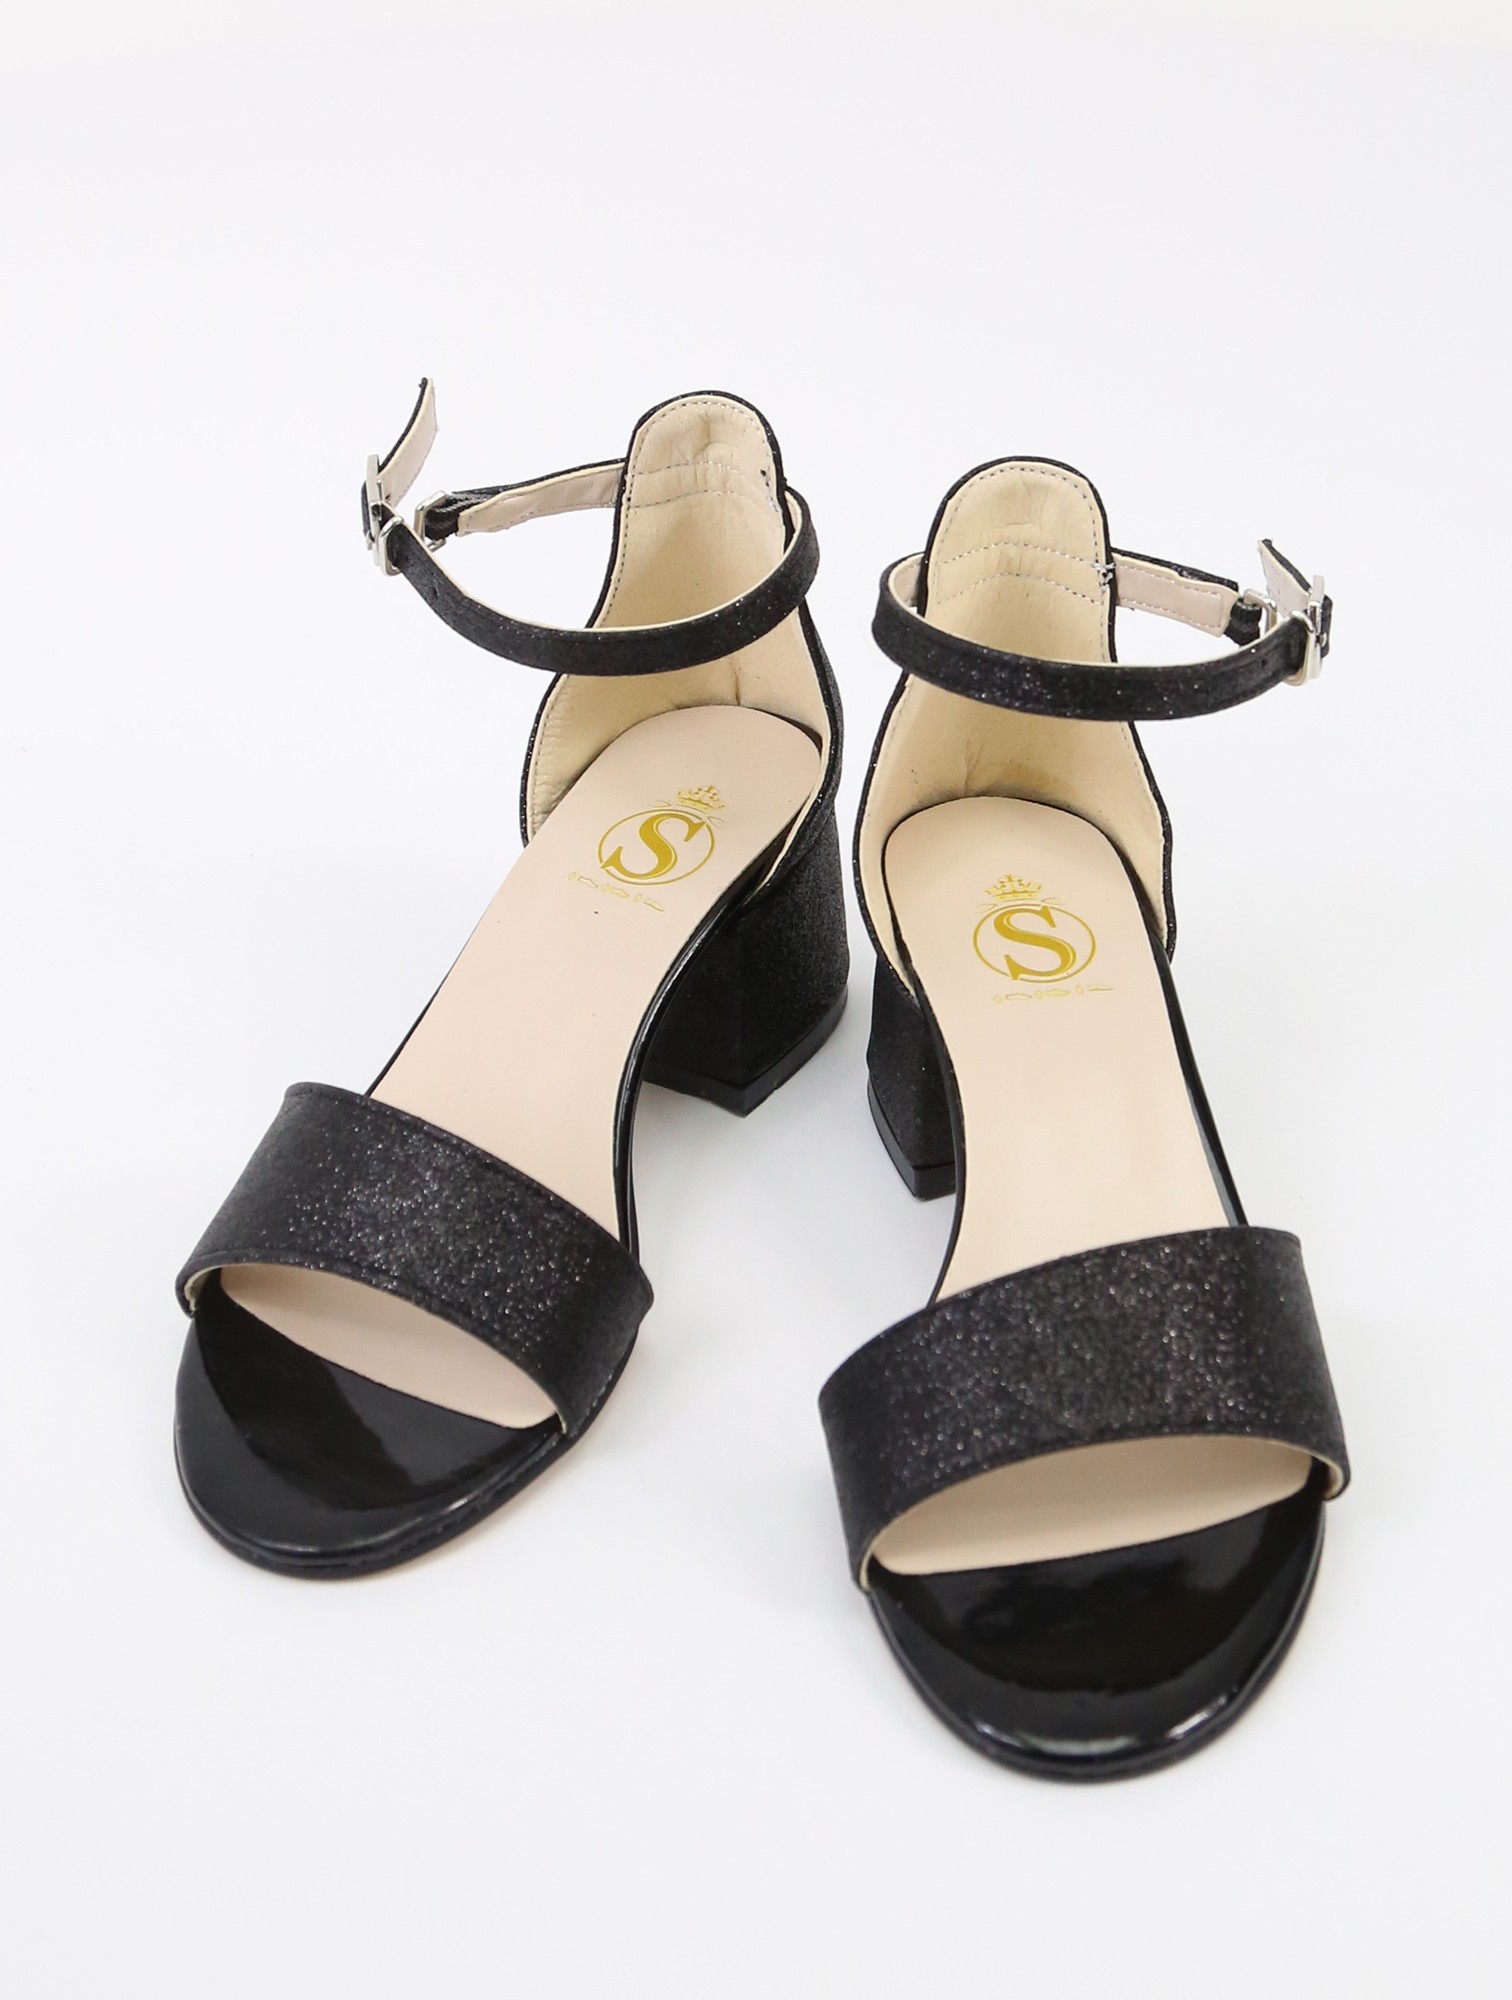 Women's Sandals | AGL Shop Online